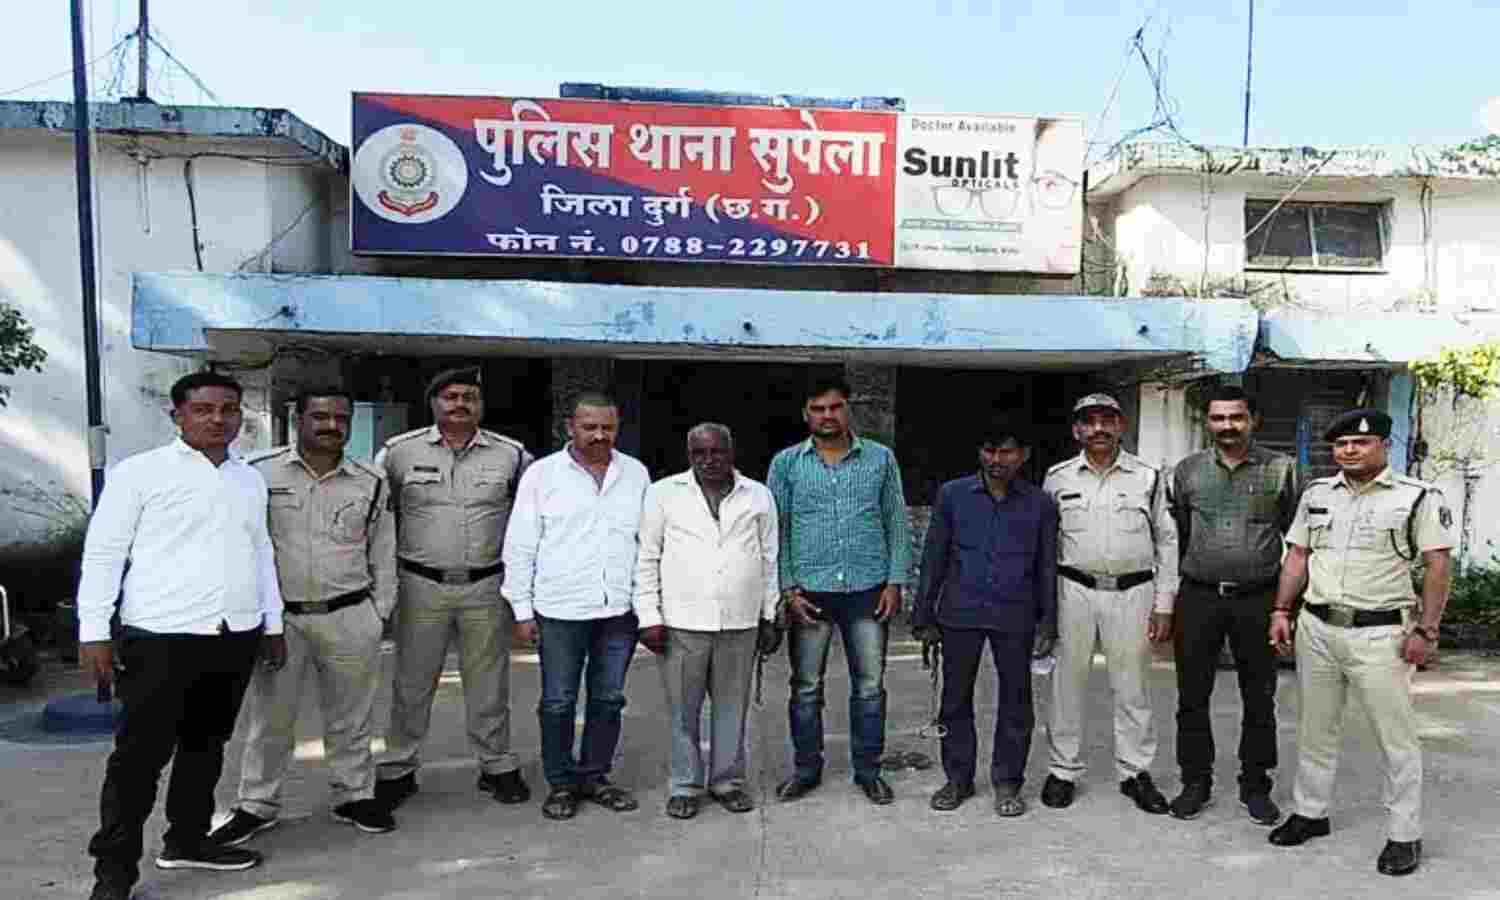 Chhattisgarh Crime News : तांत्रिक ने जादू-टोने का डर दिखाकर कारोबारी को दी जान से मारने की धमकी, पुलिस ने 4 आरोपियों को किया गिरफ्तार